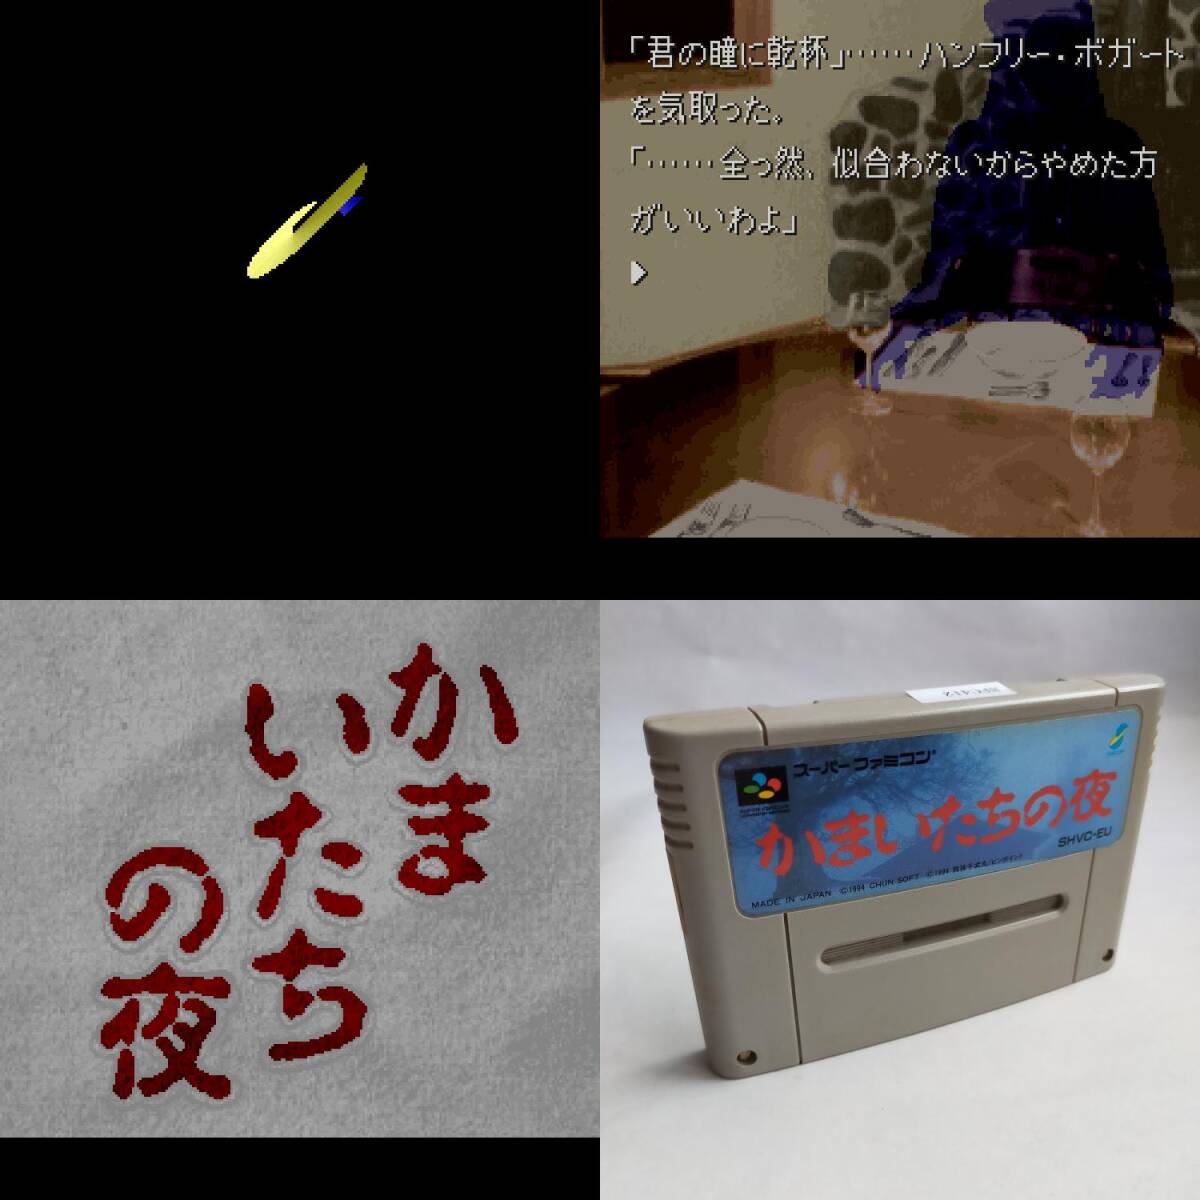  серп кама .... ночь Super Famicom рабочее состояние подтверждено * терминал чистка settled [SFC6494_412]